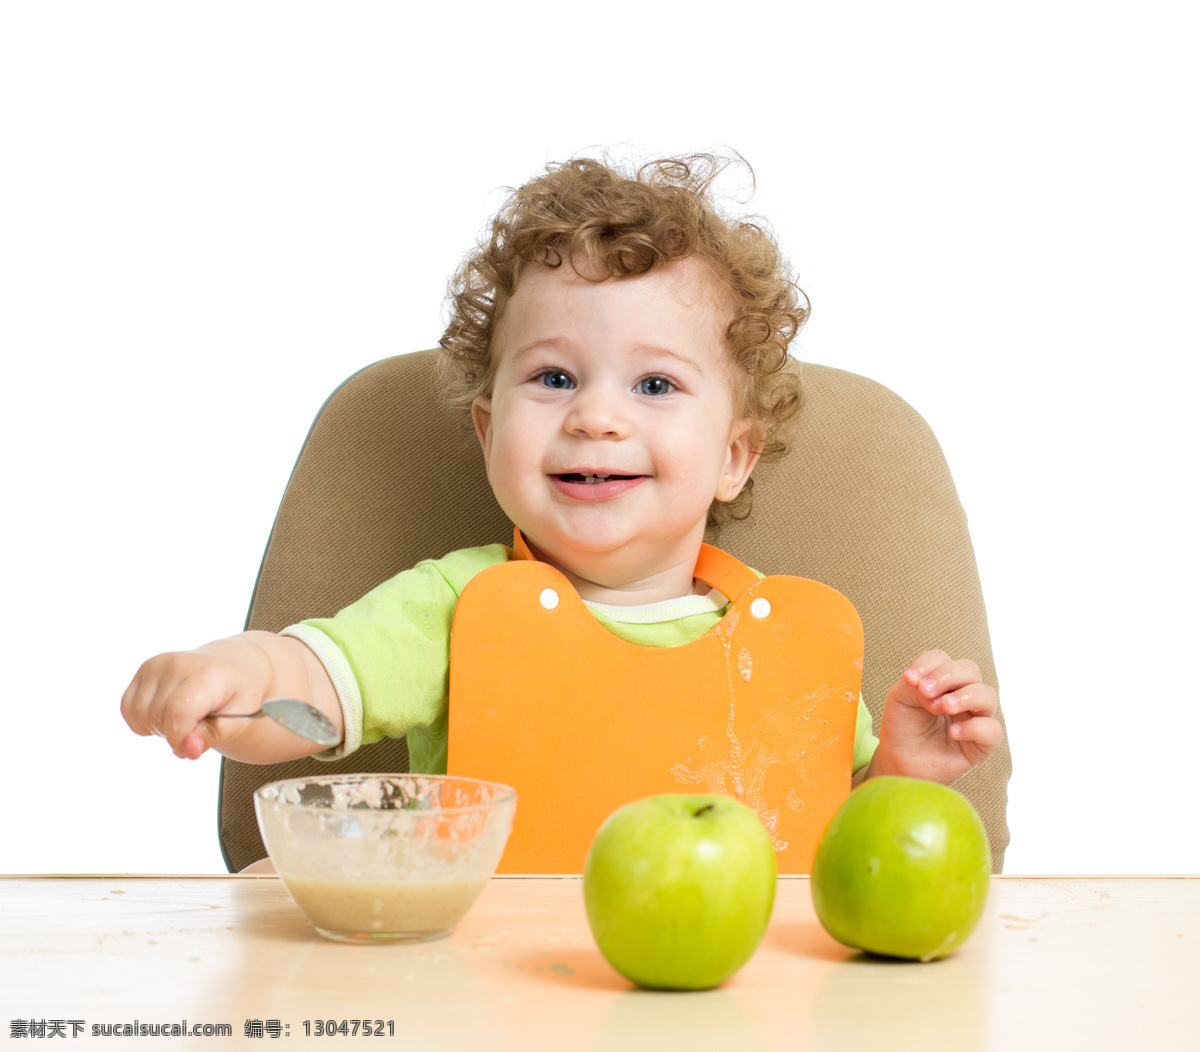 可爱 婴儿 饮食 健康饮食 吃饭 喂饭 宝宝 baby 孩子 小儿 儿童 幼儿 人物图库 儿童幼儿